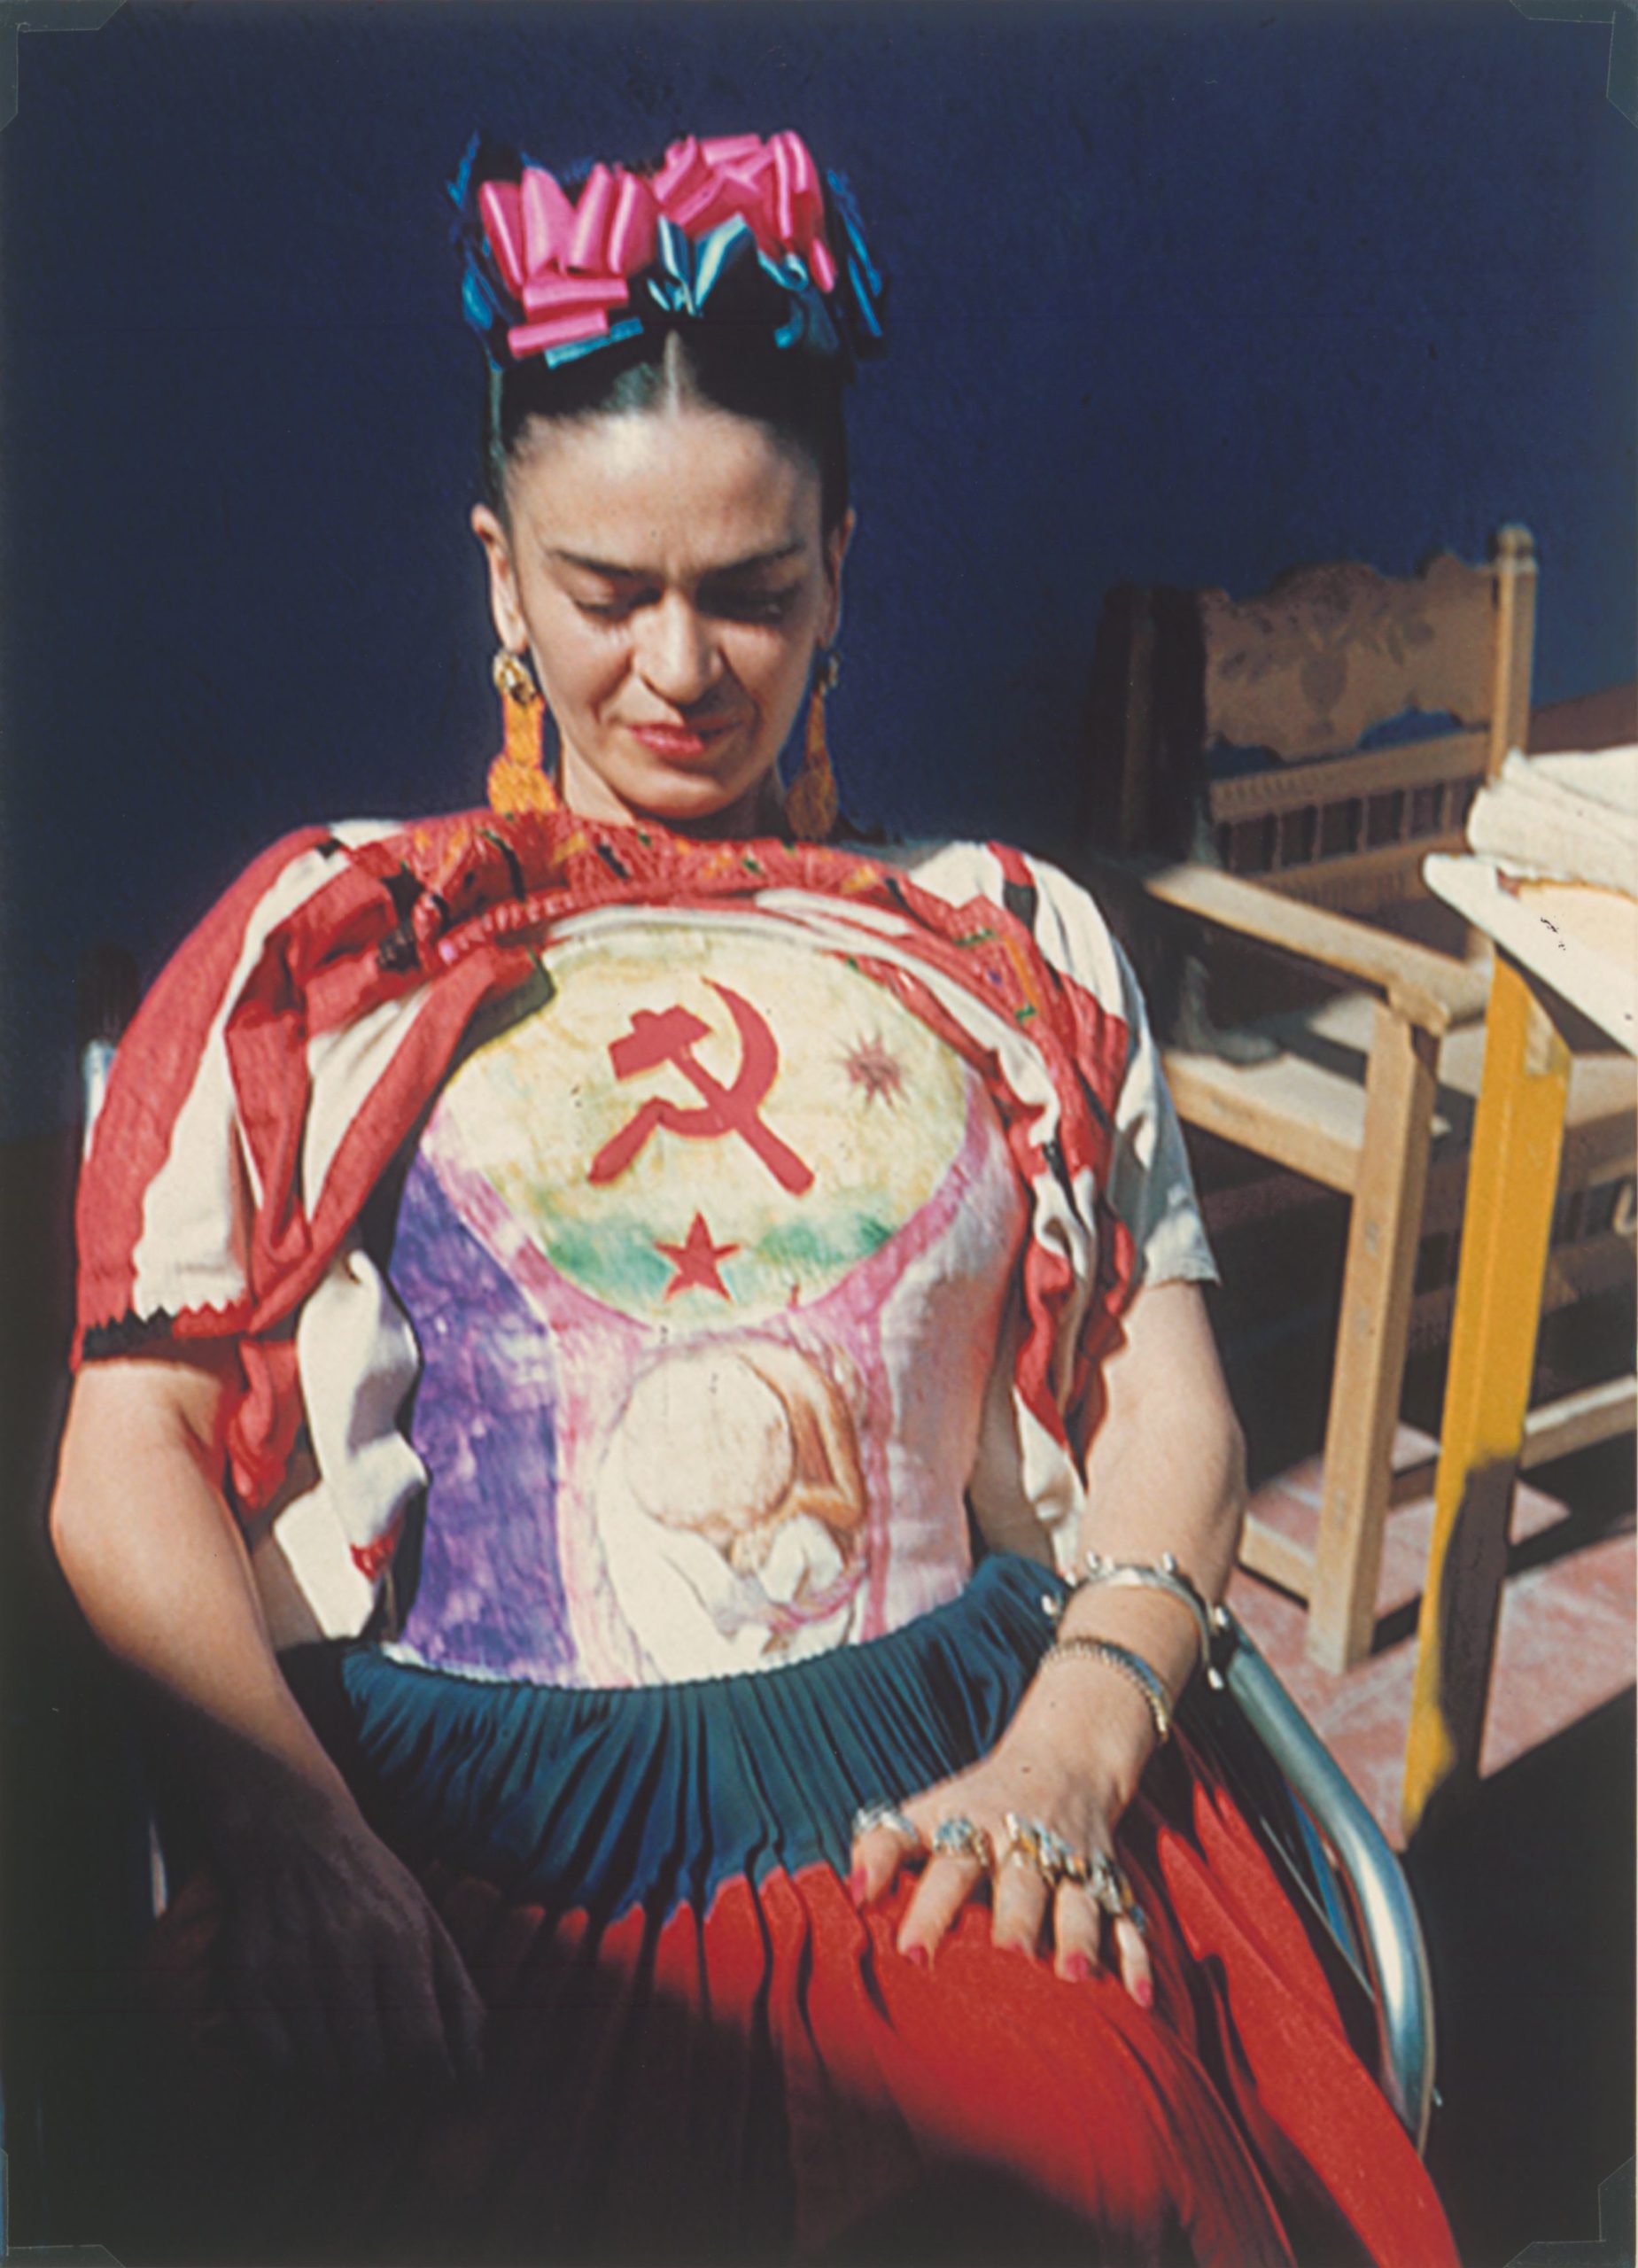 portrait photo artiste en costume mexicain coloré. Femme artiste assise avec des fleurs dans les cheveux.